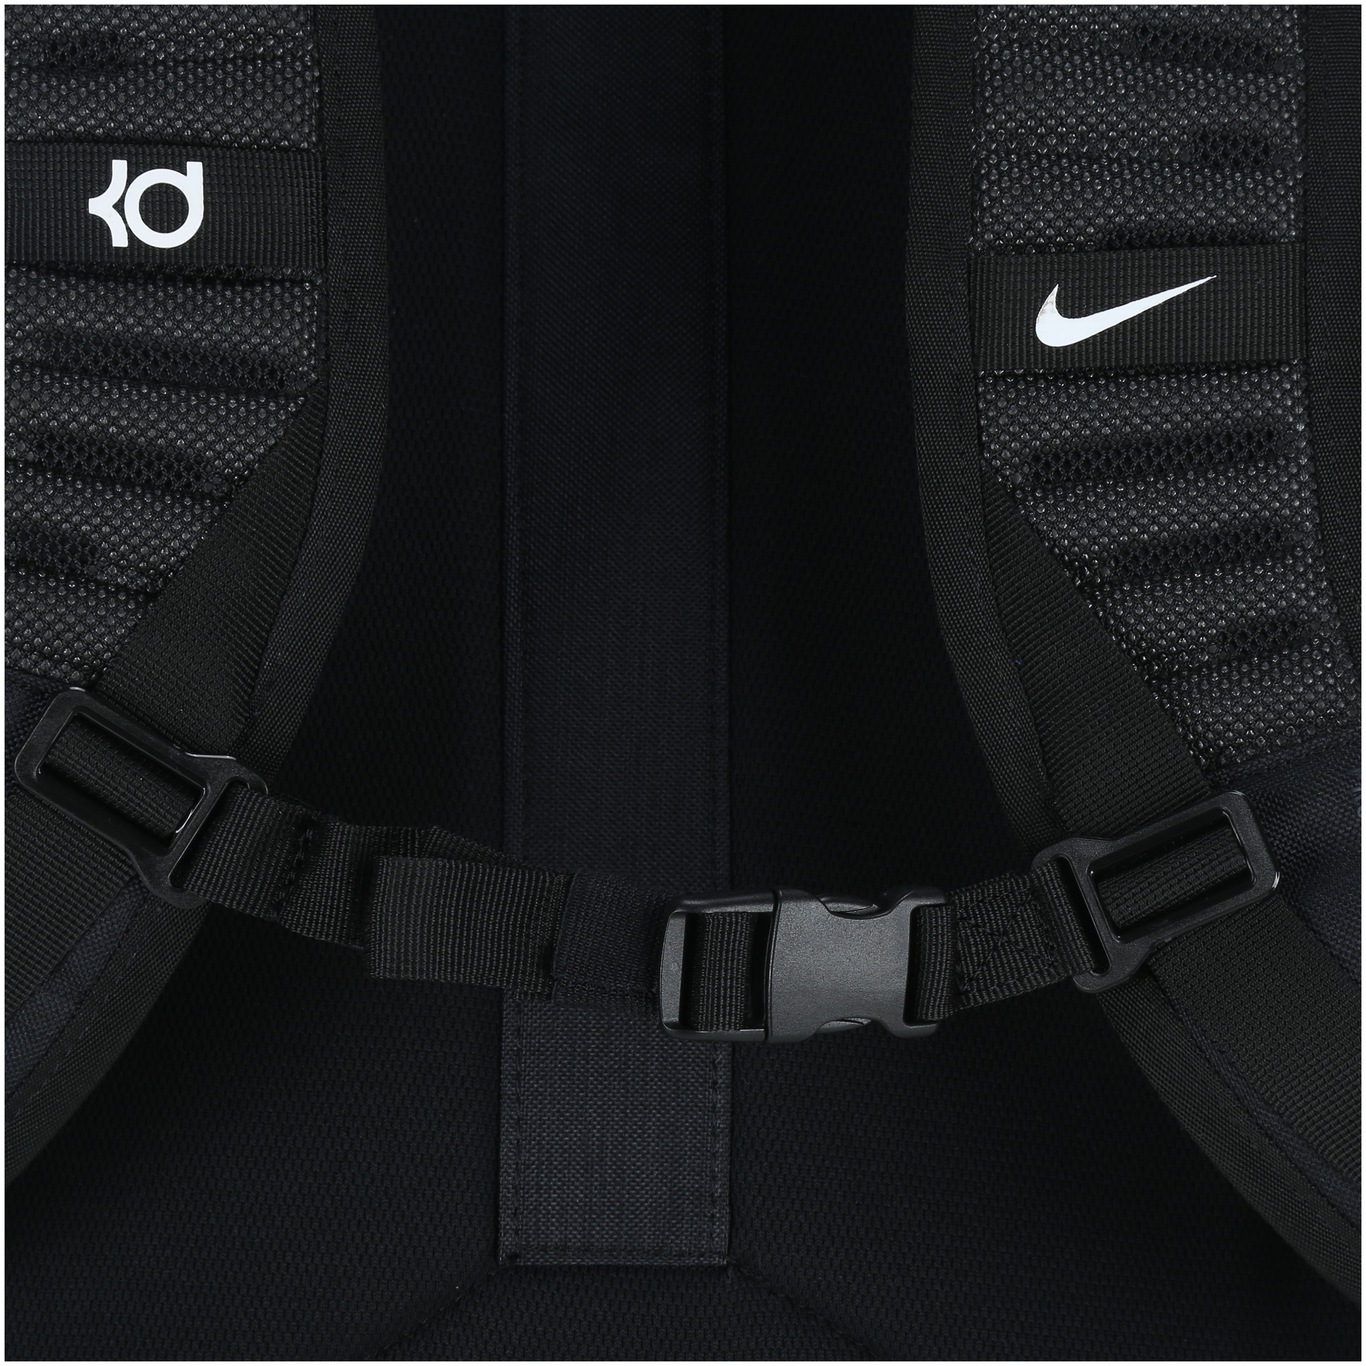 Mochila Nike KD Trey 5 - 35 Litros |